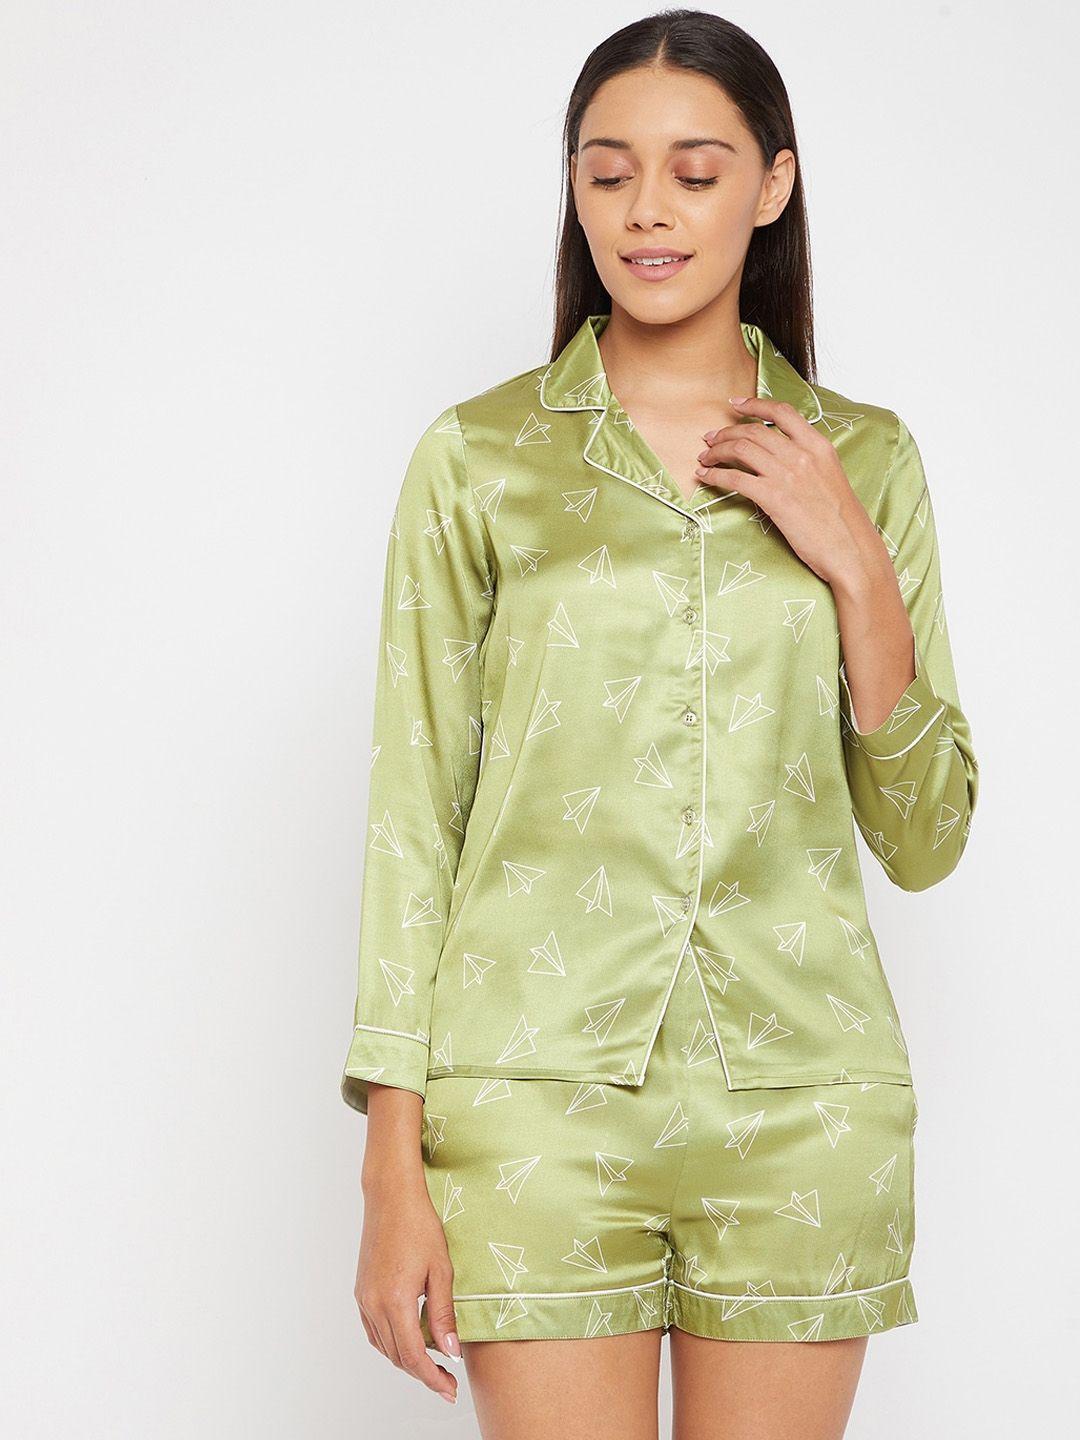 panit women lime green & white printed night suit